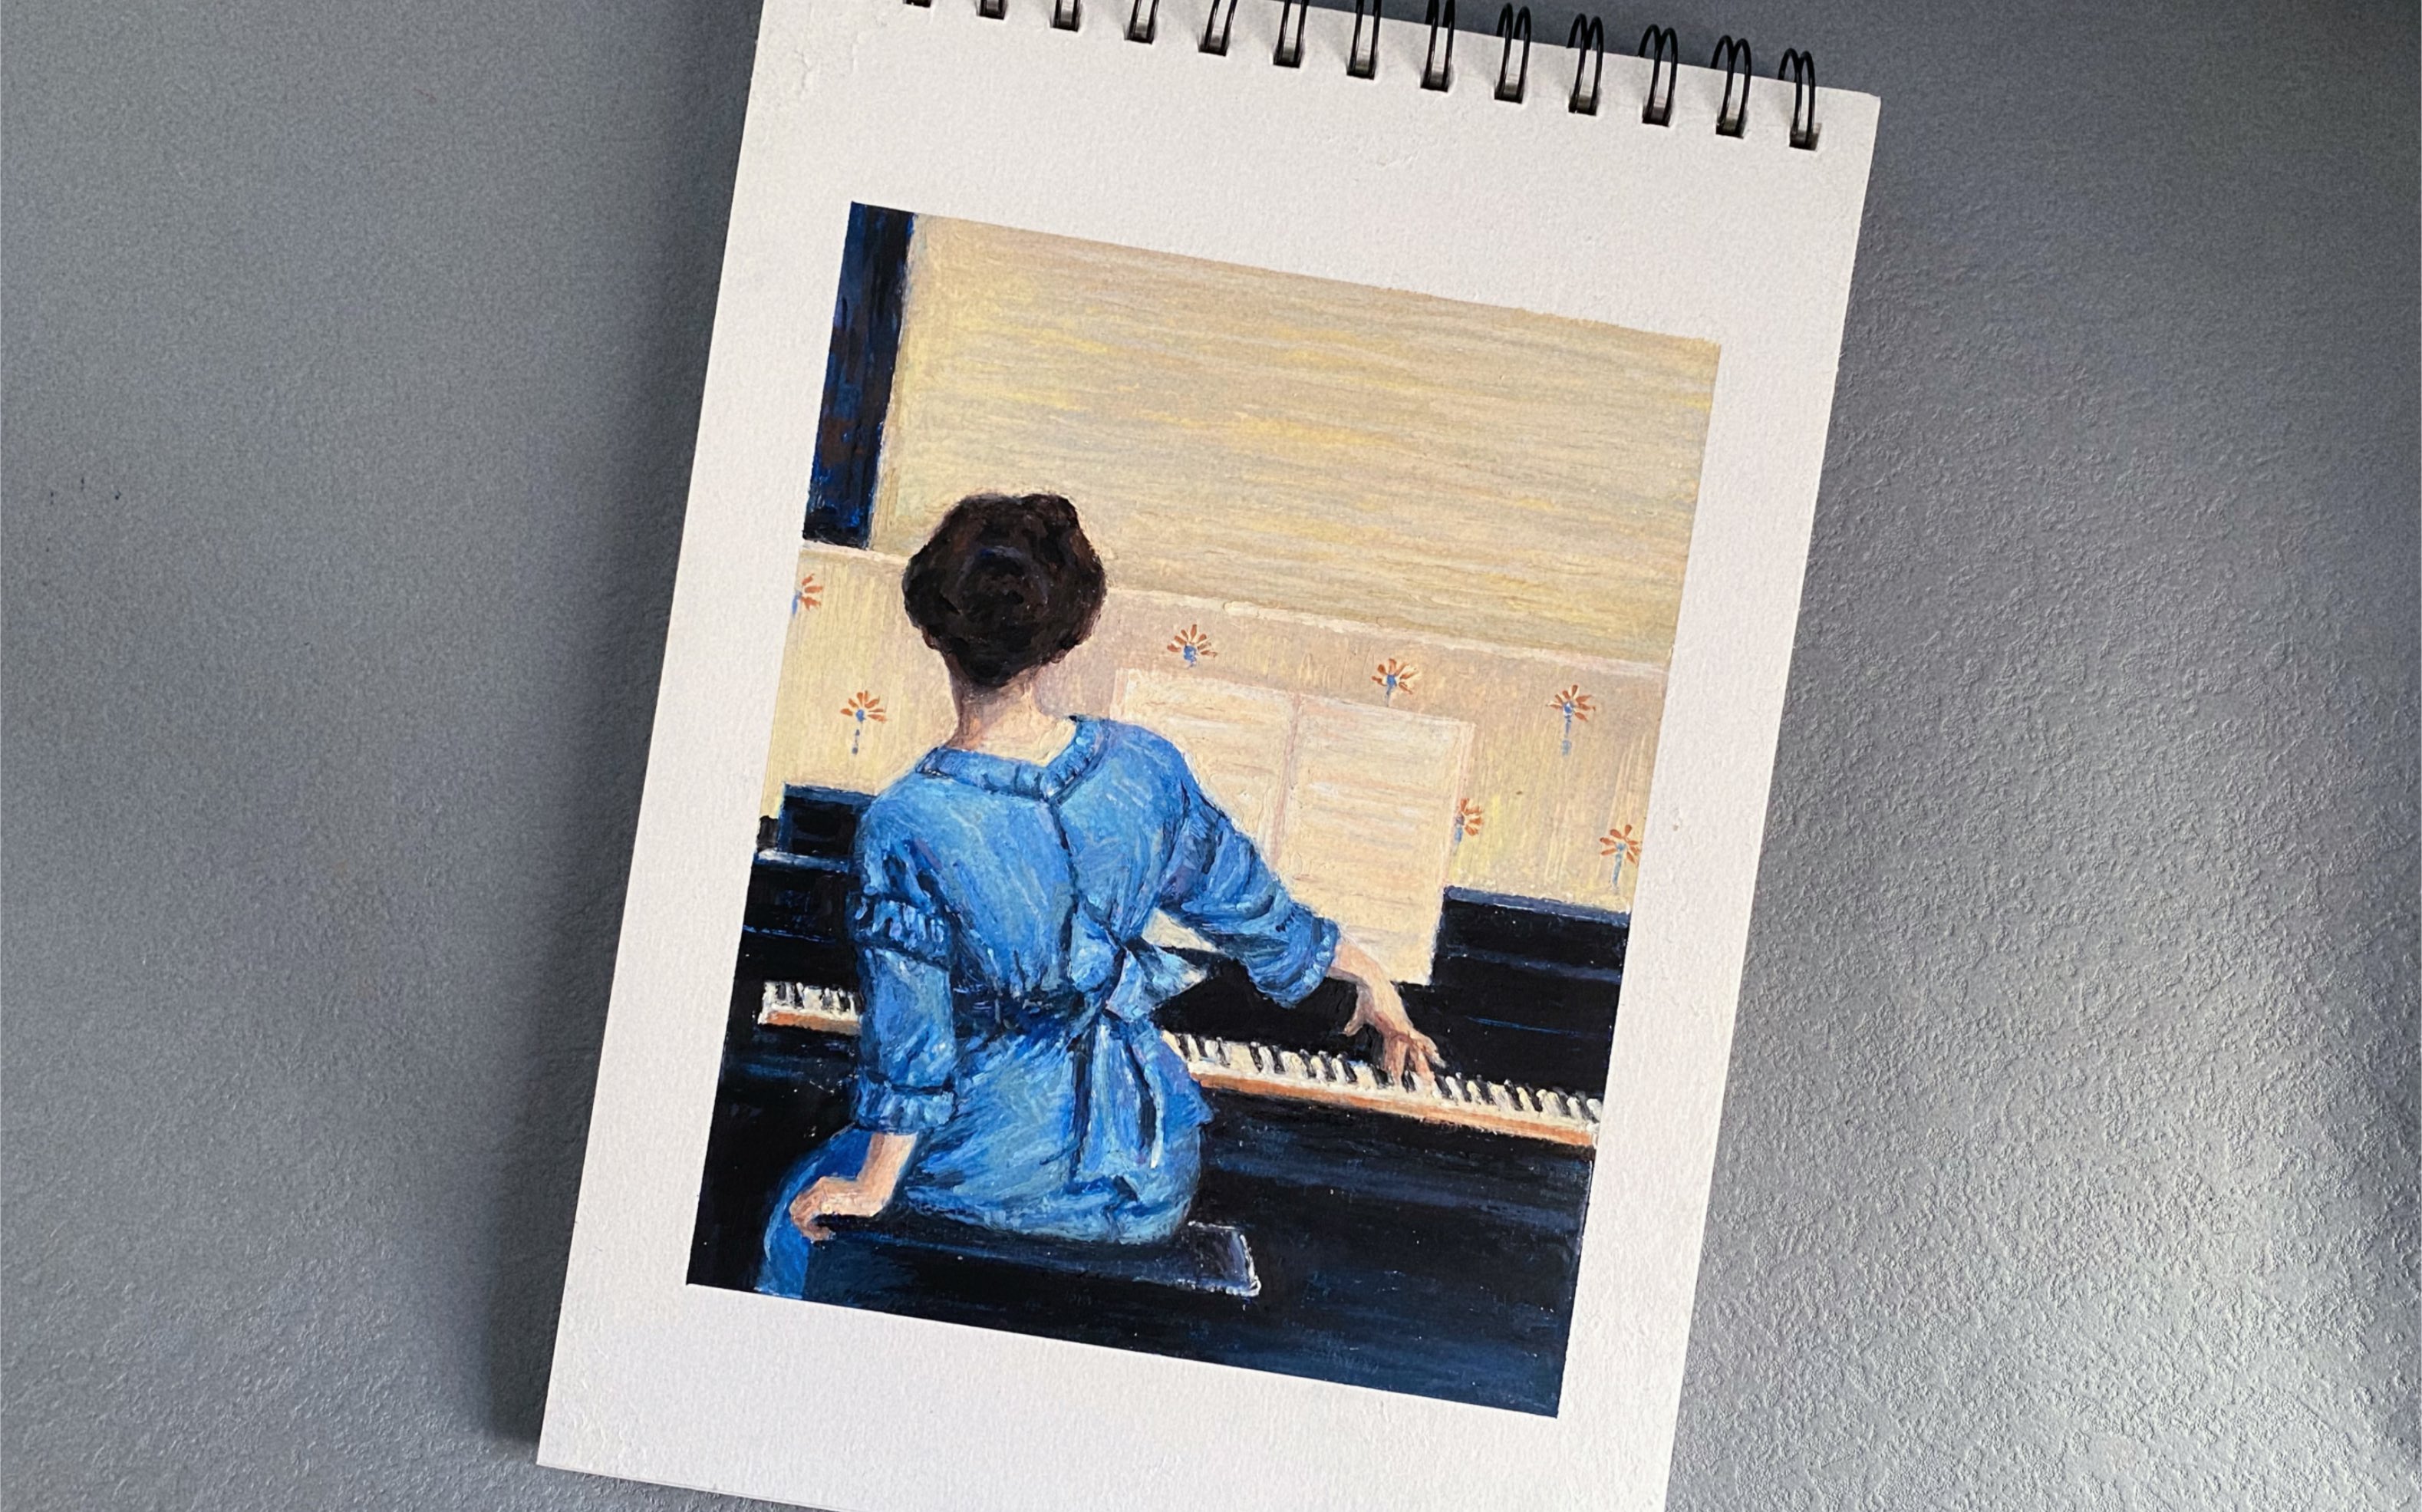 弹钢琴的女人背影油画图片